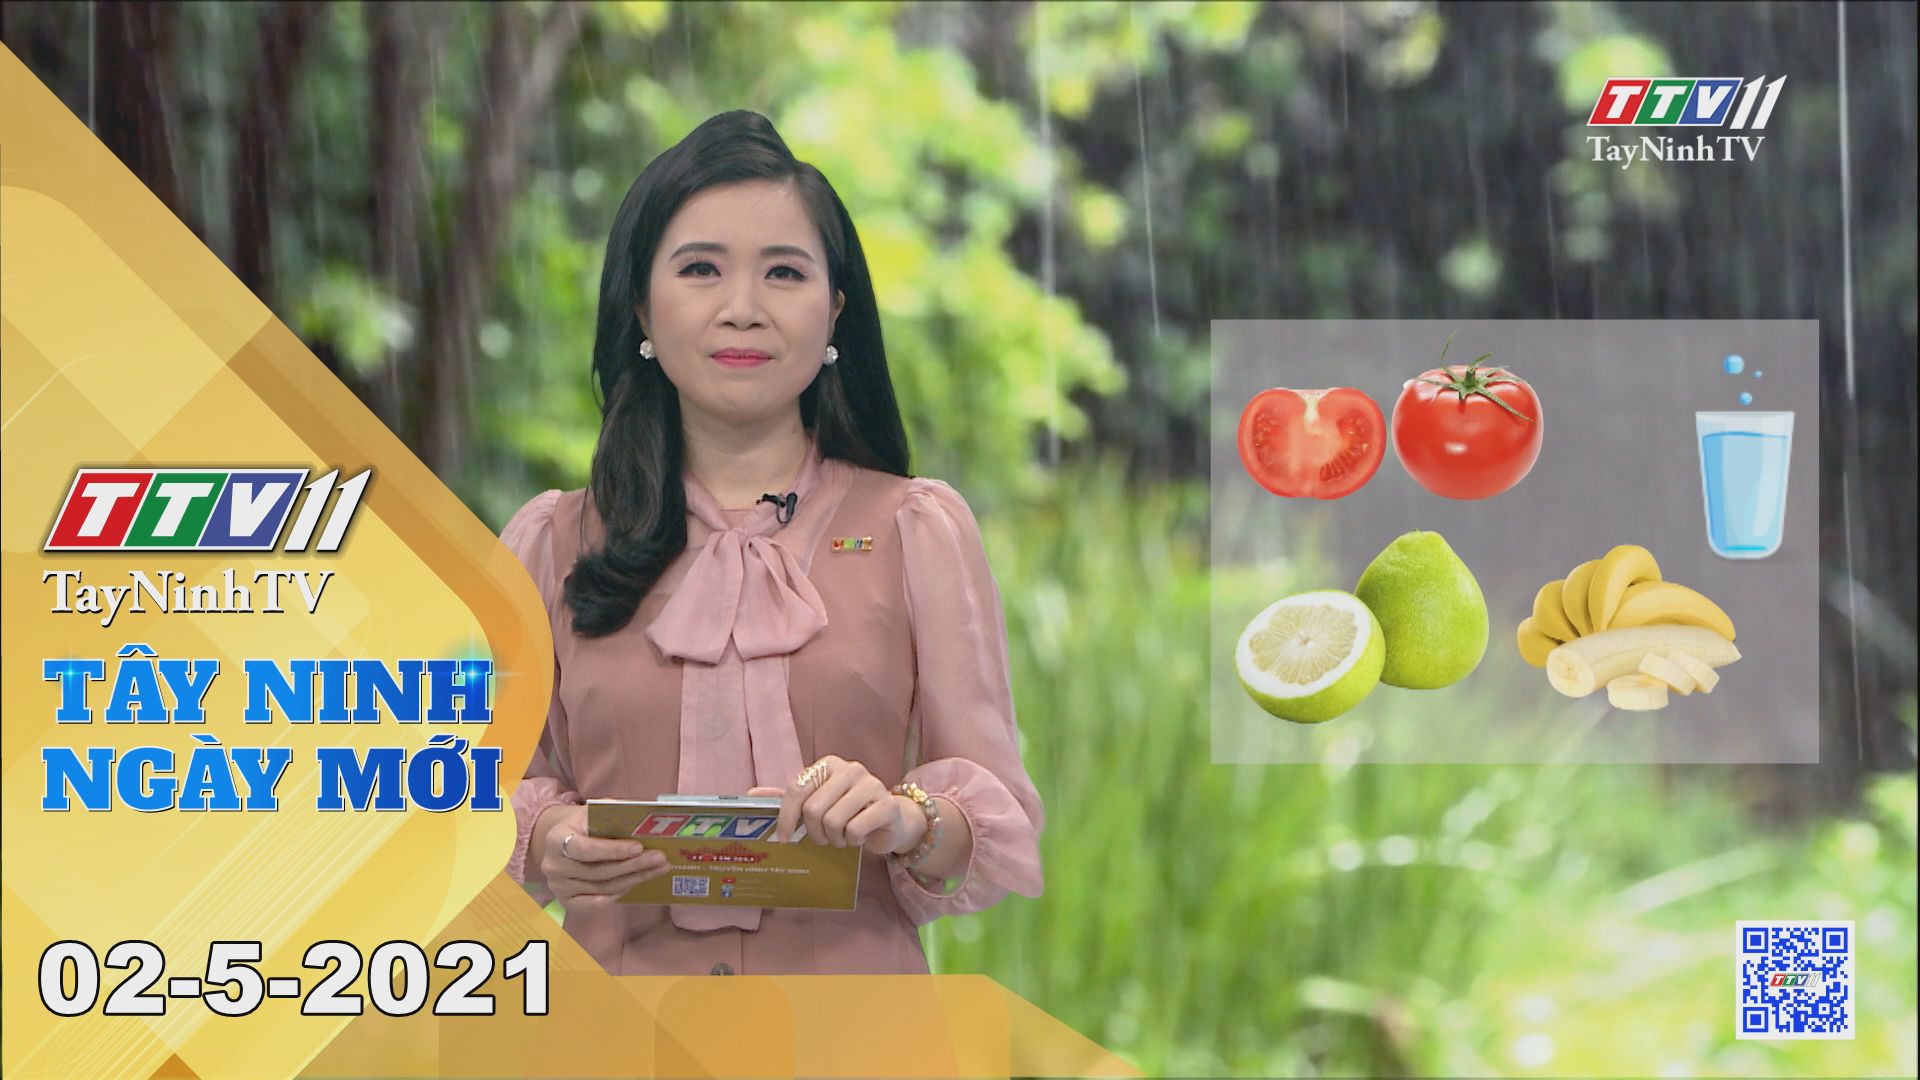 Tây Ninh Ngày Mới 02-5-2021 | Tin tức hôm nay | TayNinhTV